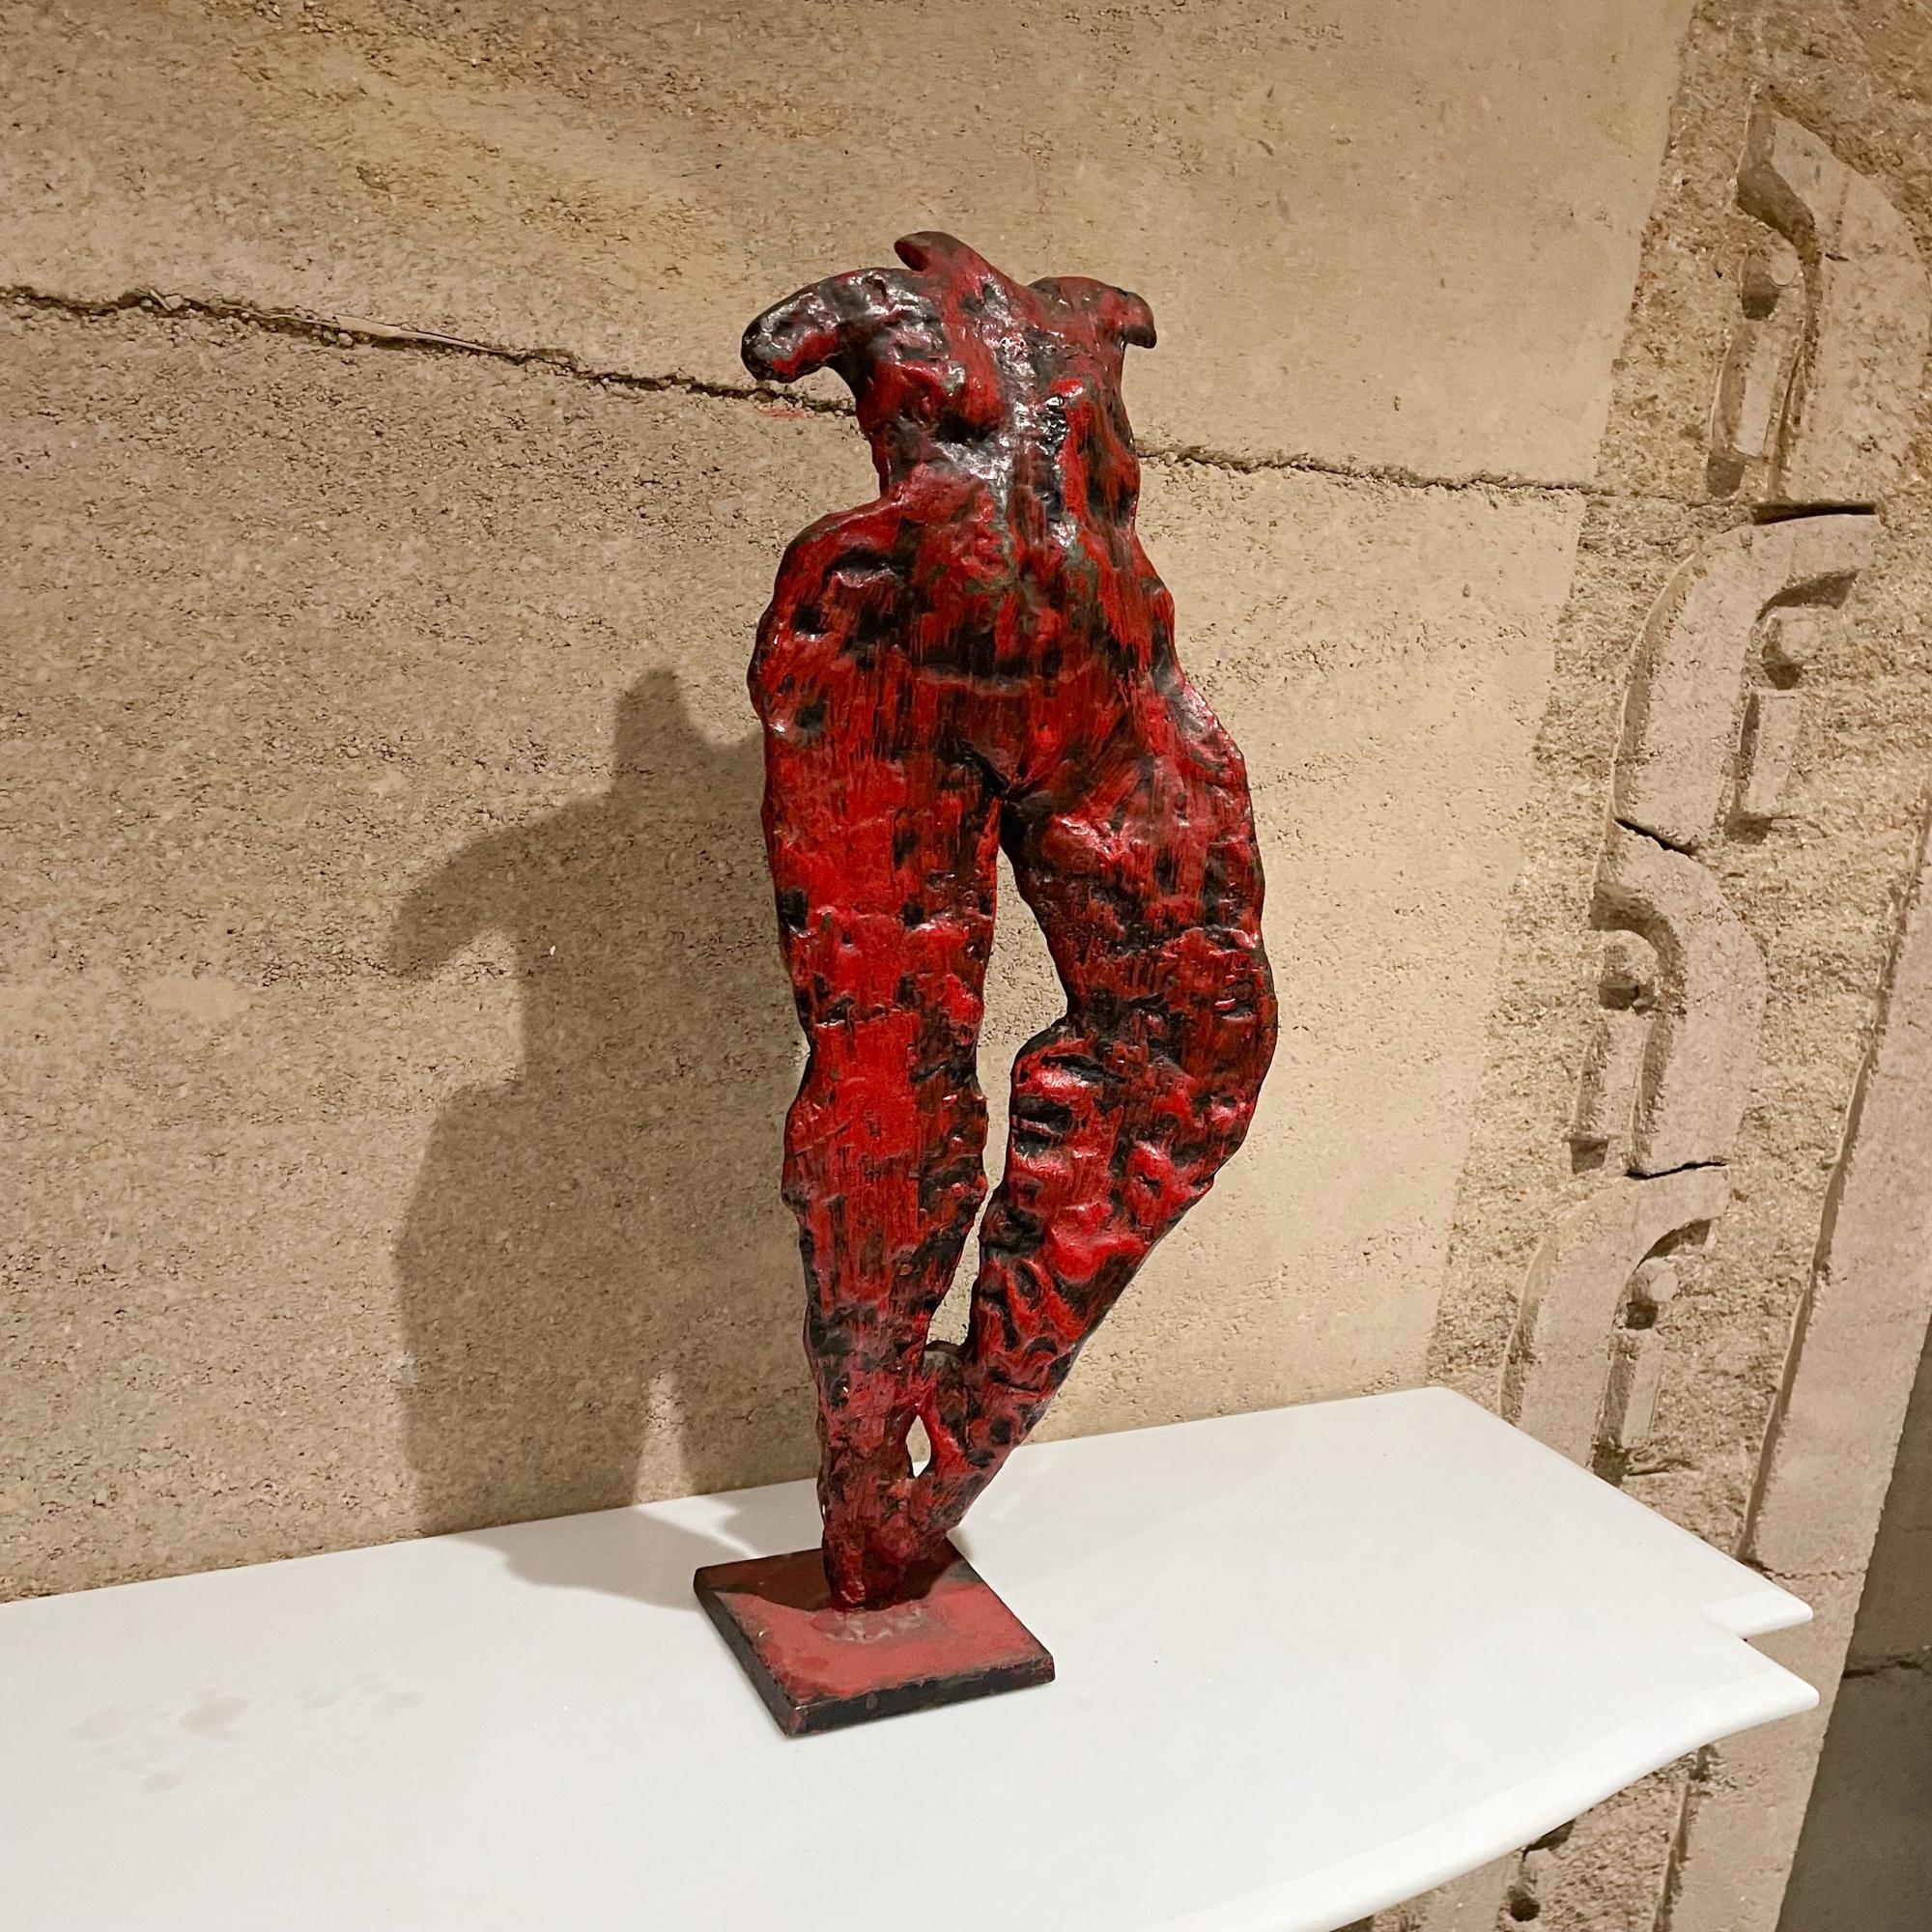 
Französische moderne Nackttänzer abstrakte Skulptur in roter Bronze
Schwere massive Bronze mit rot-schwarzer Patina.
Unmarkiert. 
Abmessungen: 21 H x 8 B x 4,5 T Zoll.
Hergestellt in Frankreich in den 1950er Jahren.
Sehr guter unrestaurierter